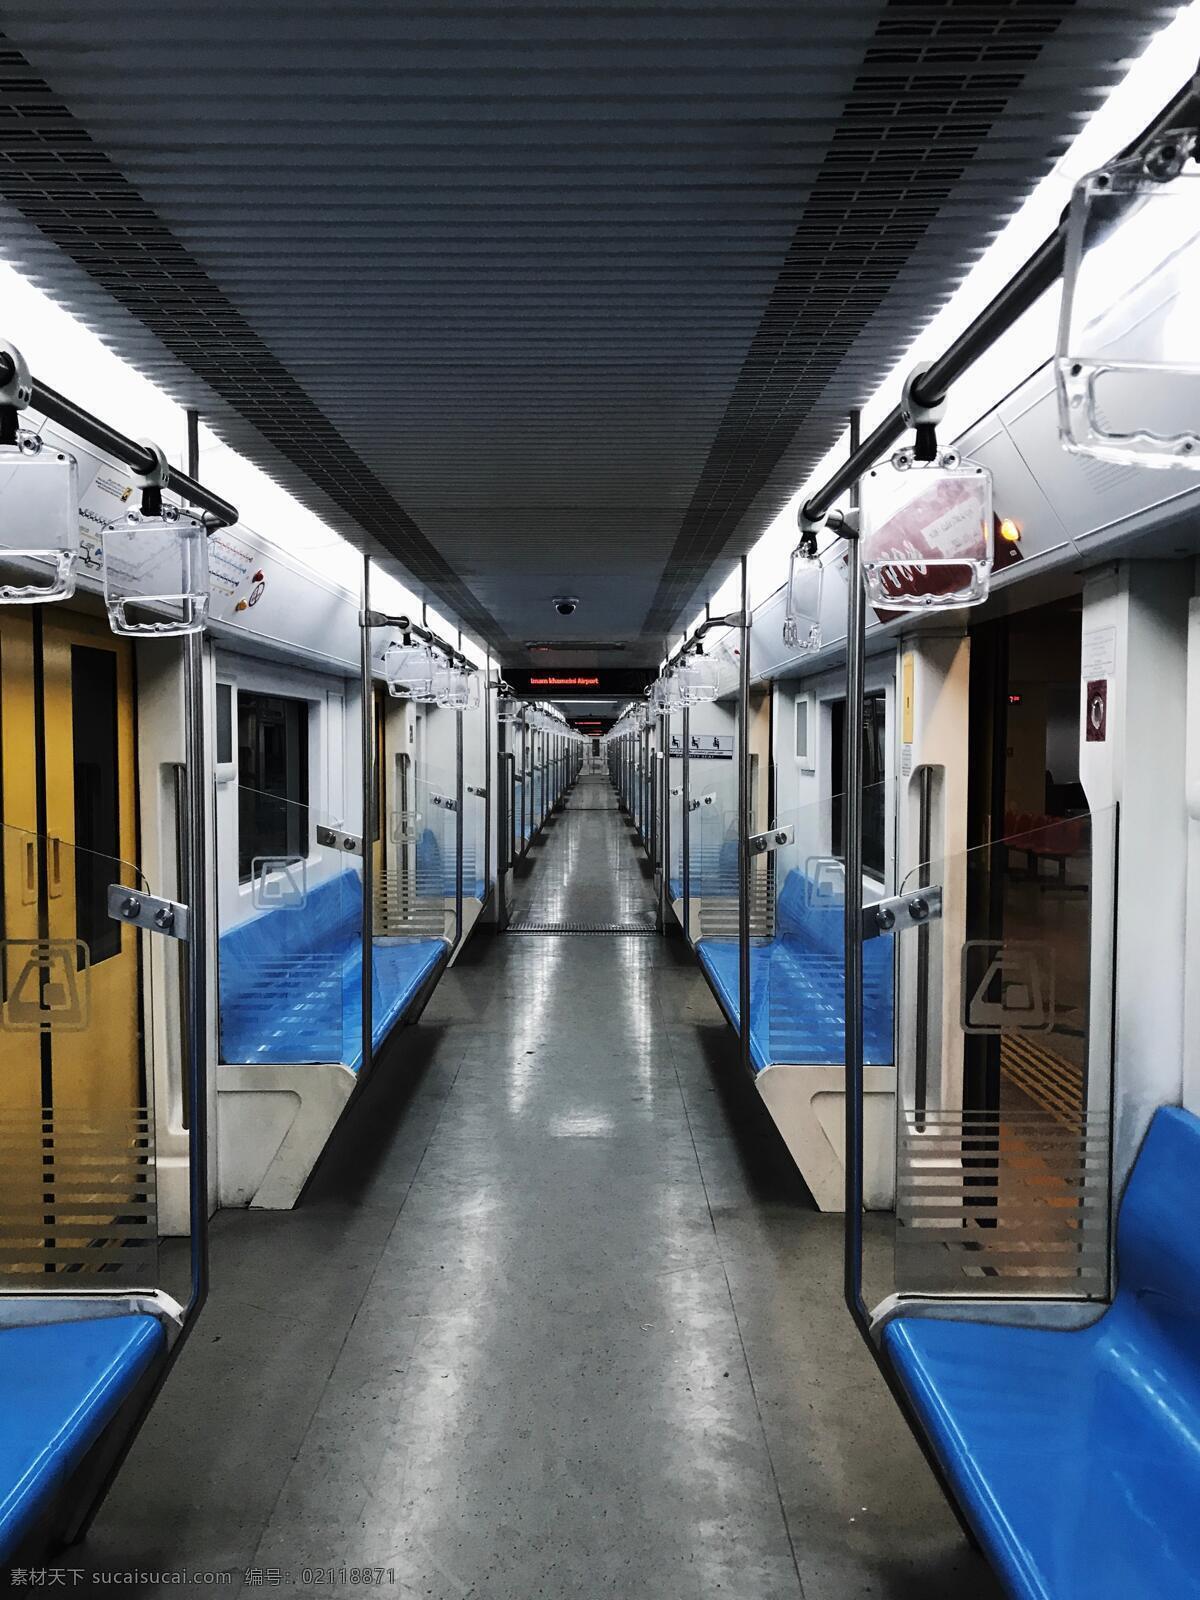 空无一人 地铁 空旷 蓝色 高清 超清 壁纸 旅游摄影 国外旅游